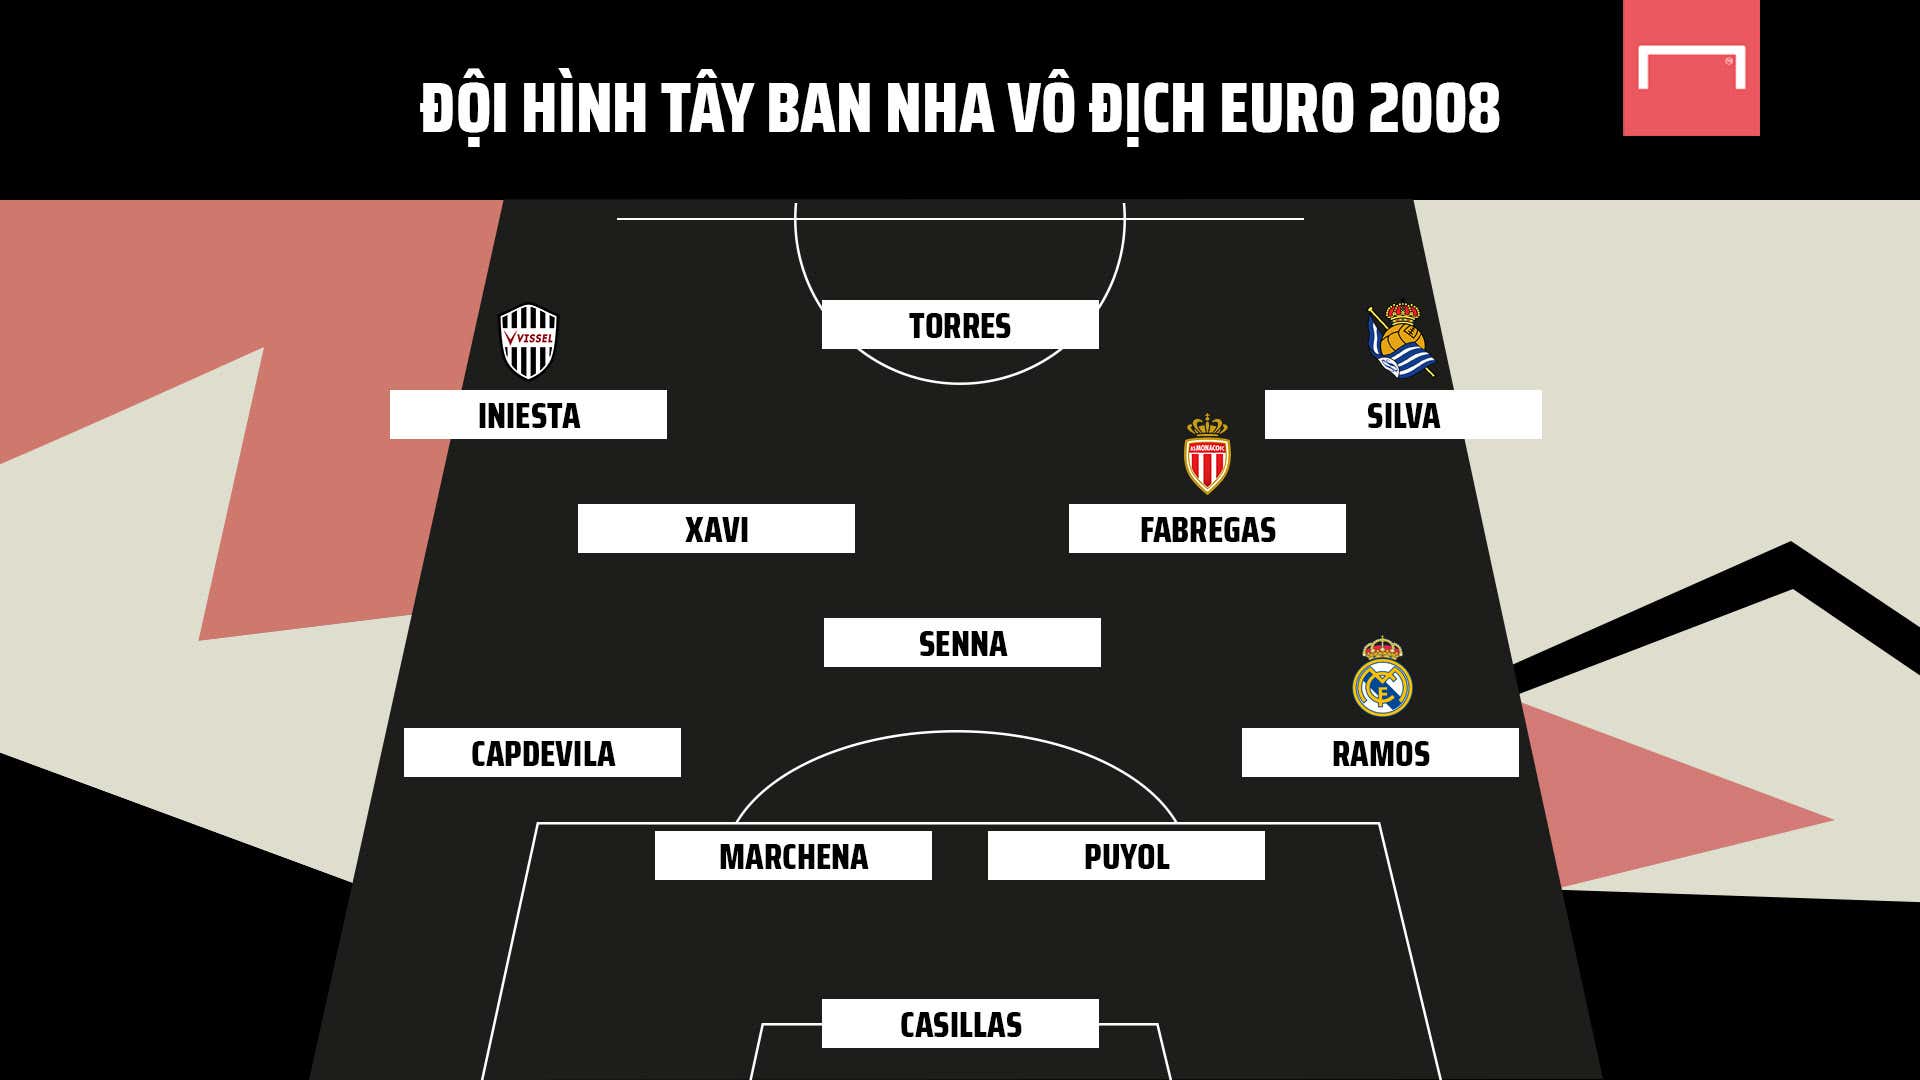 Đội Hình Tây Ban Nha Vô Địch Euro 2008 Giờ Ở Đâu?